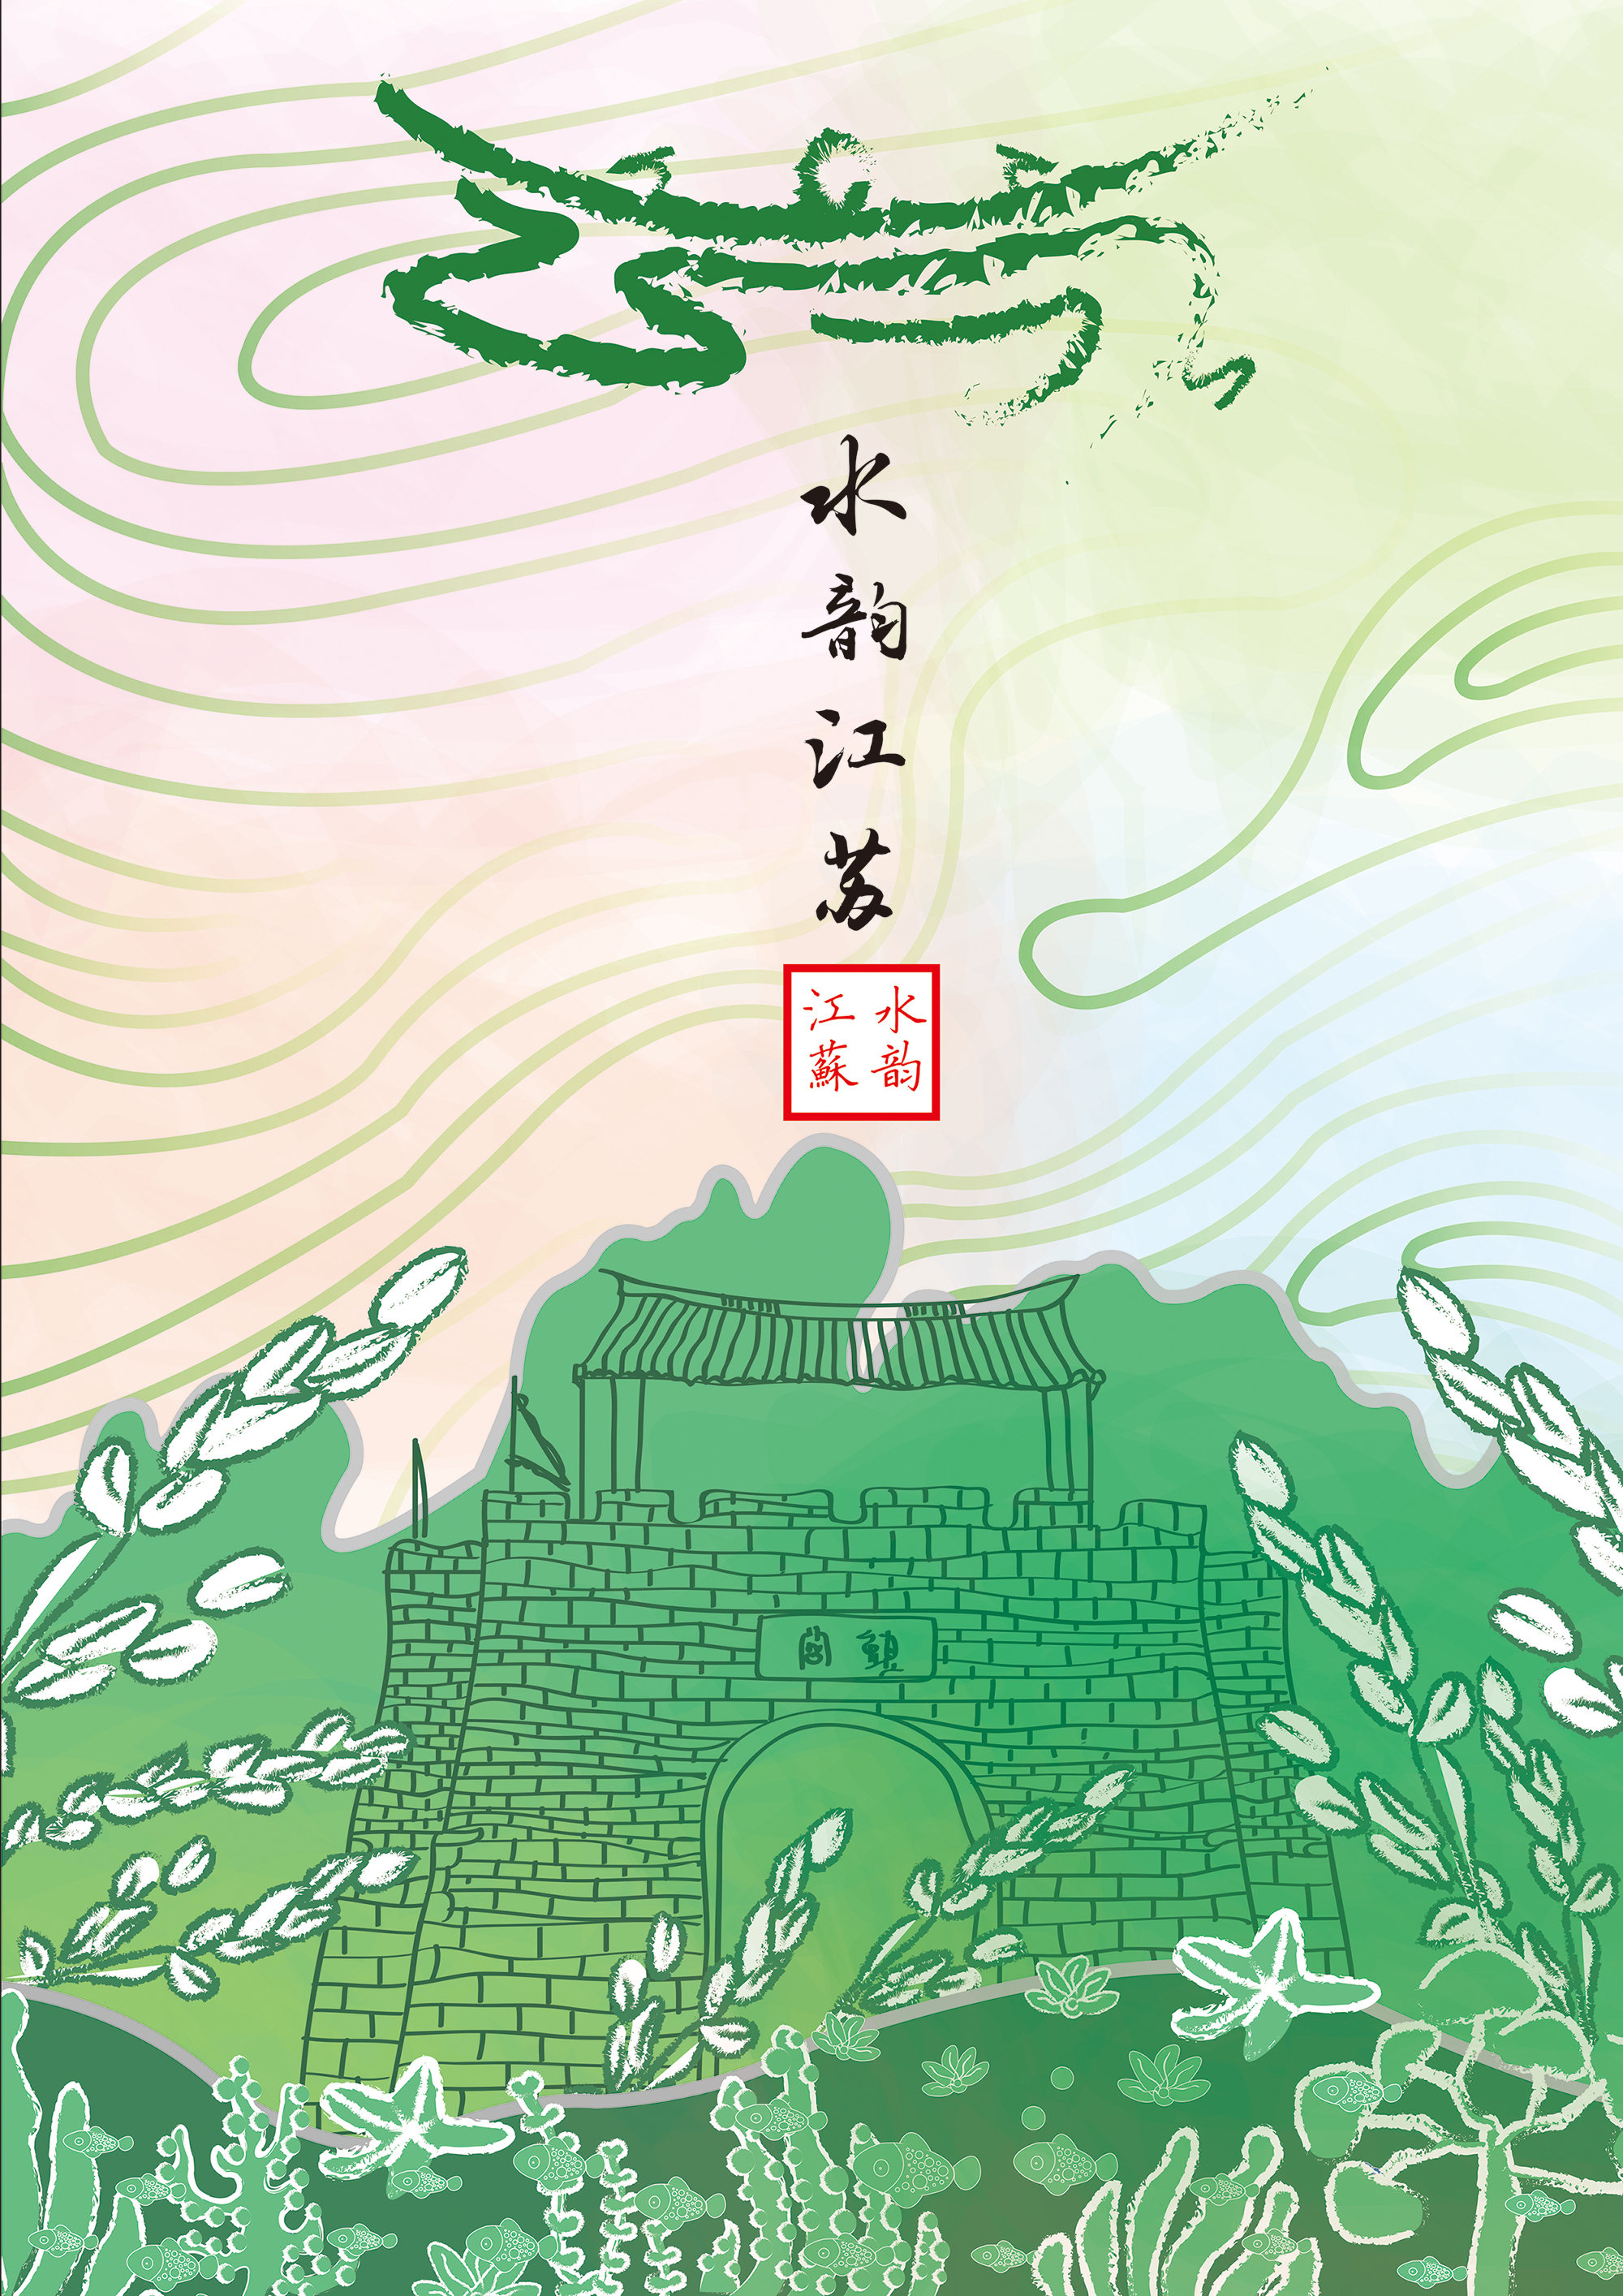 设计说明:通过江苏省特色的旅游景点进行设计,有中国水墨画的感觉同时